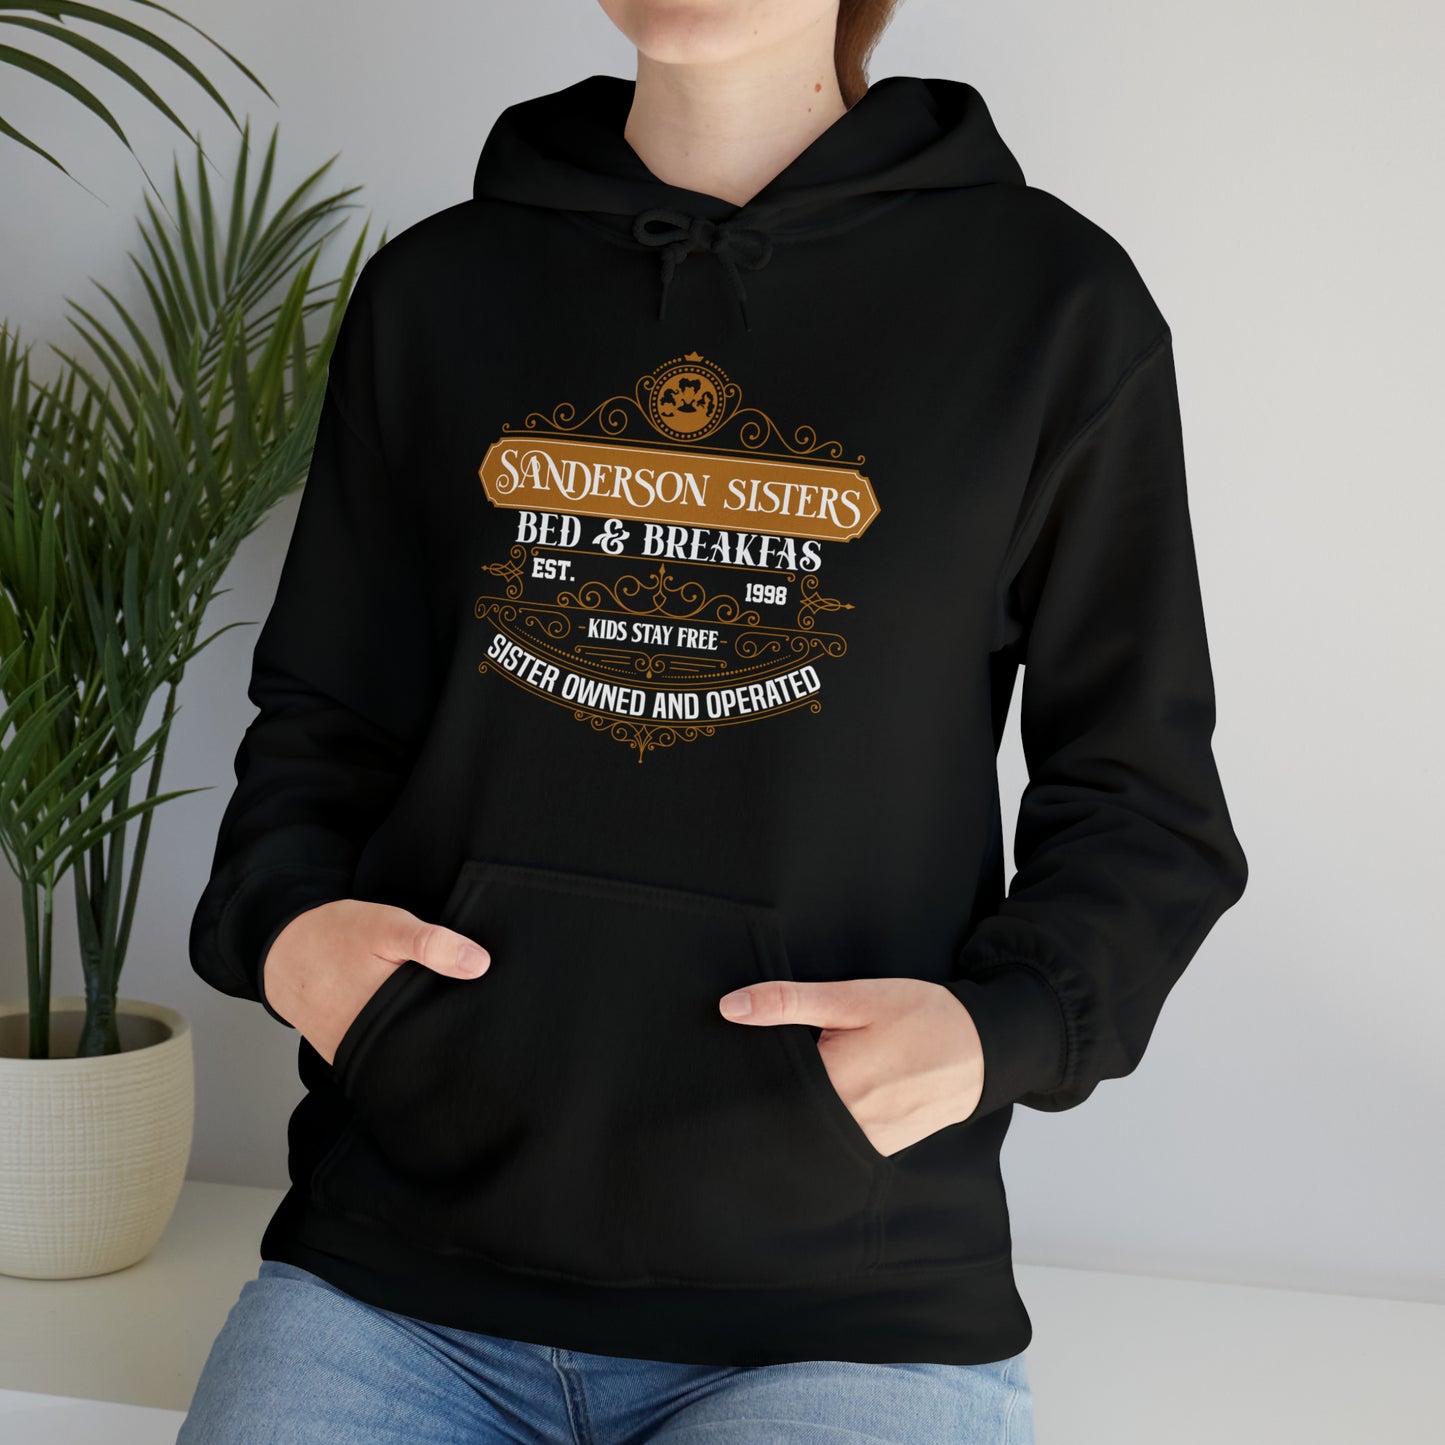 Sanders Sisters Bed & Breakfas | Hooded Sweatshirt